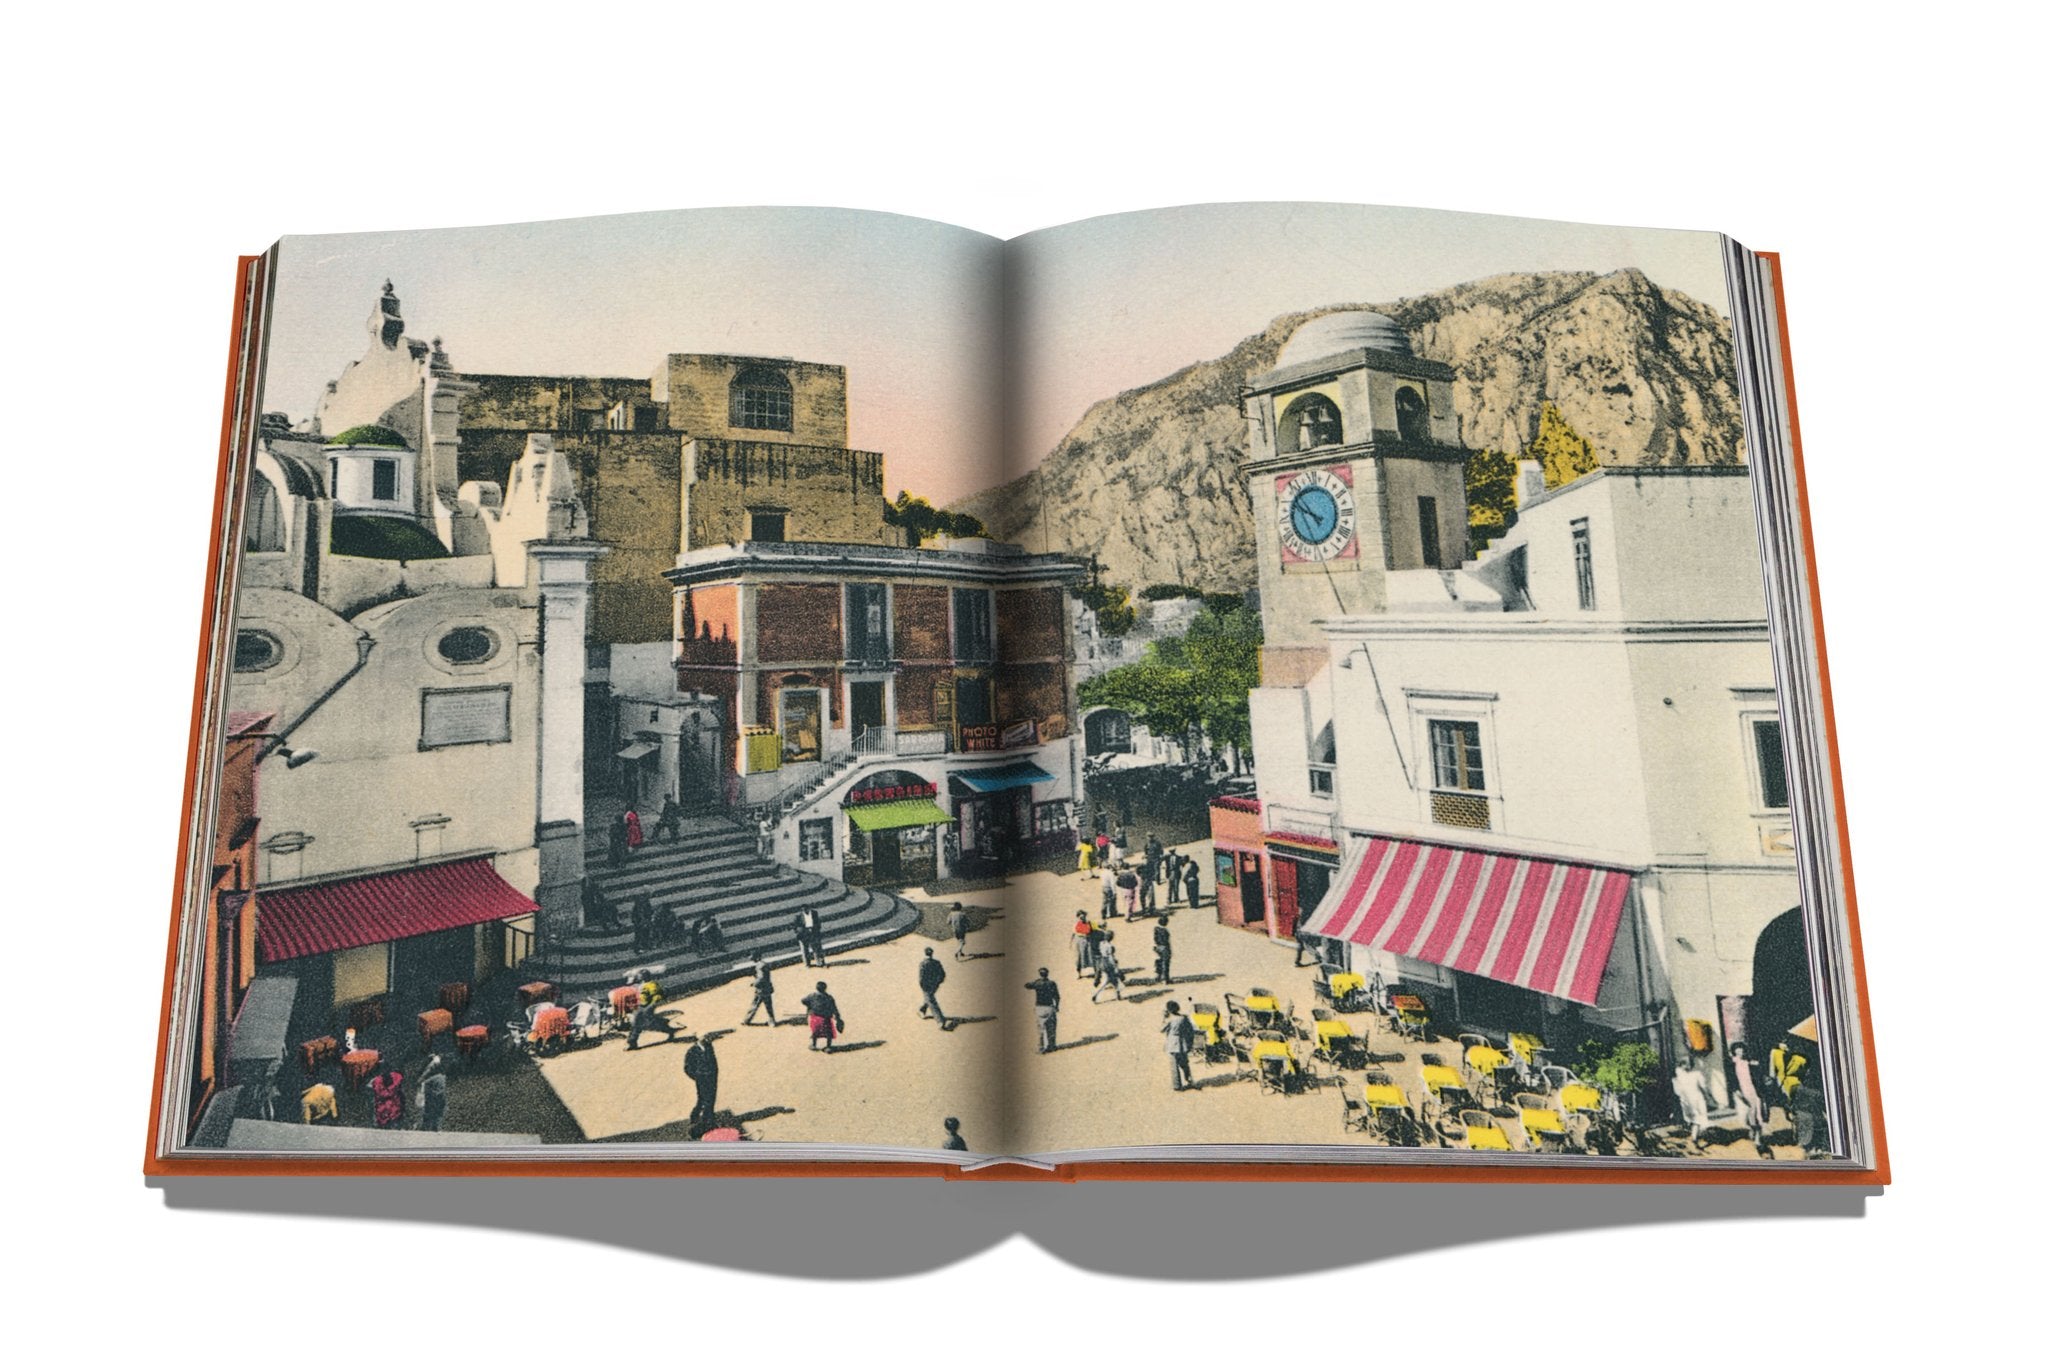 ASSOULINE Capri Dolce Vita Hardcover Book by Cesare Cunaccia